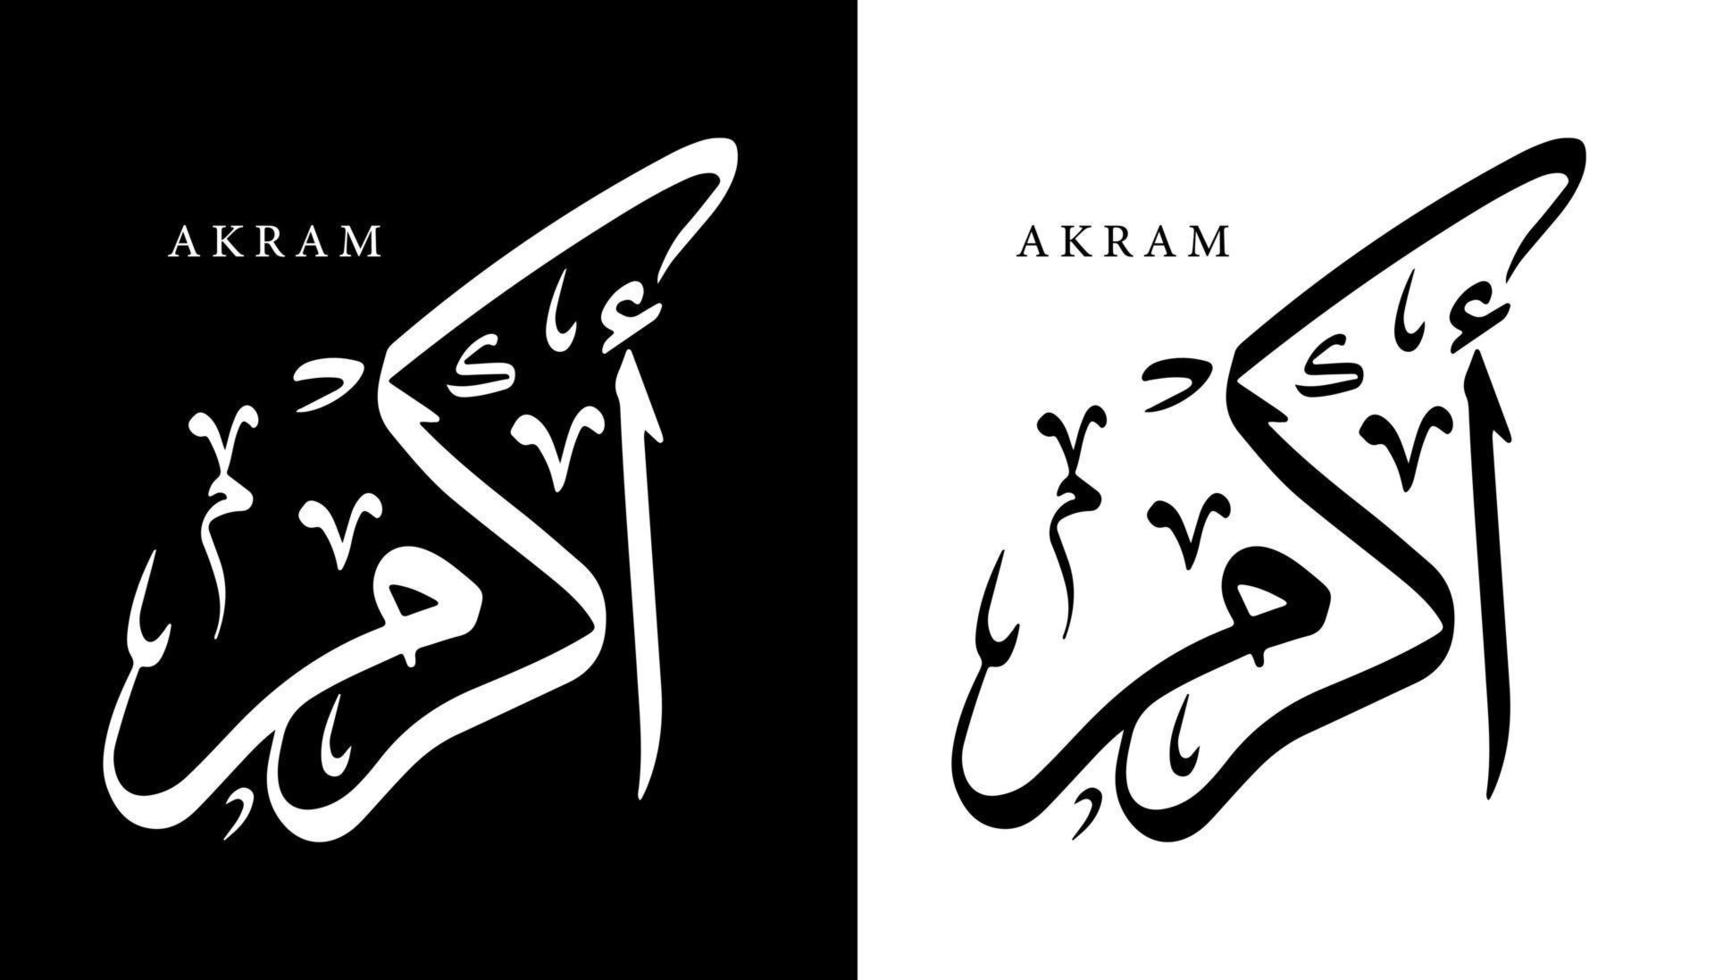 nombre de caligrafía árabe traducido 'akram' letras árabes alfabeto fuente letras islámicas logotipo vector ilustración